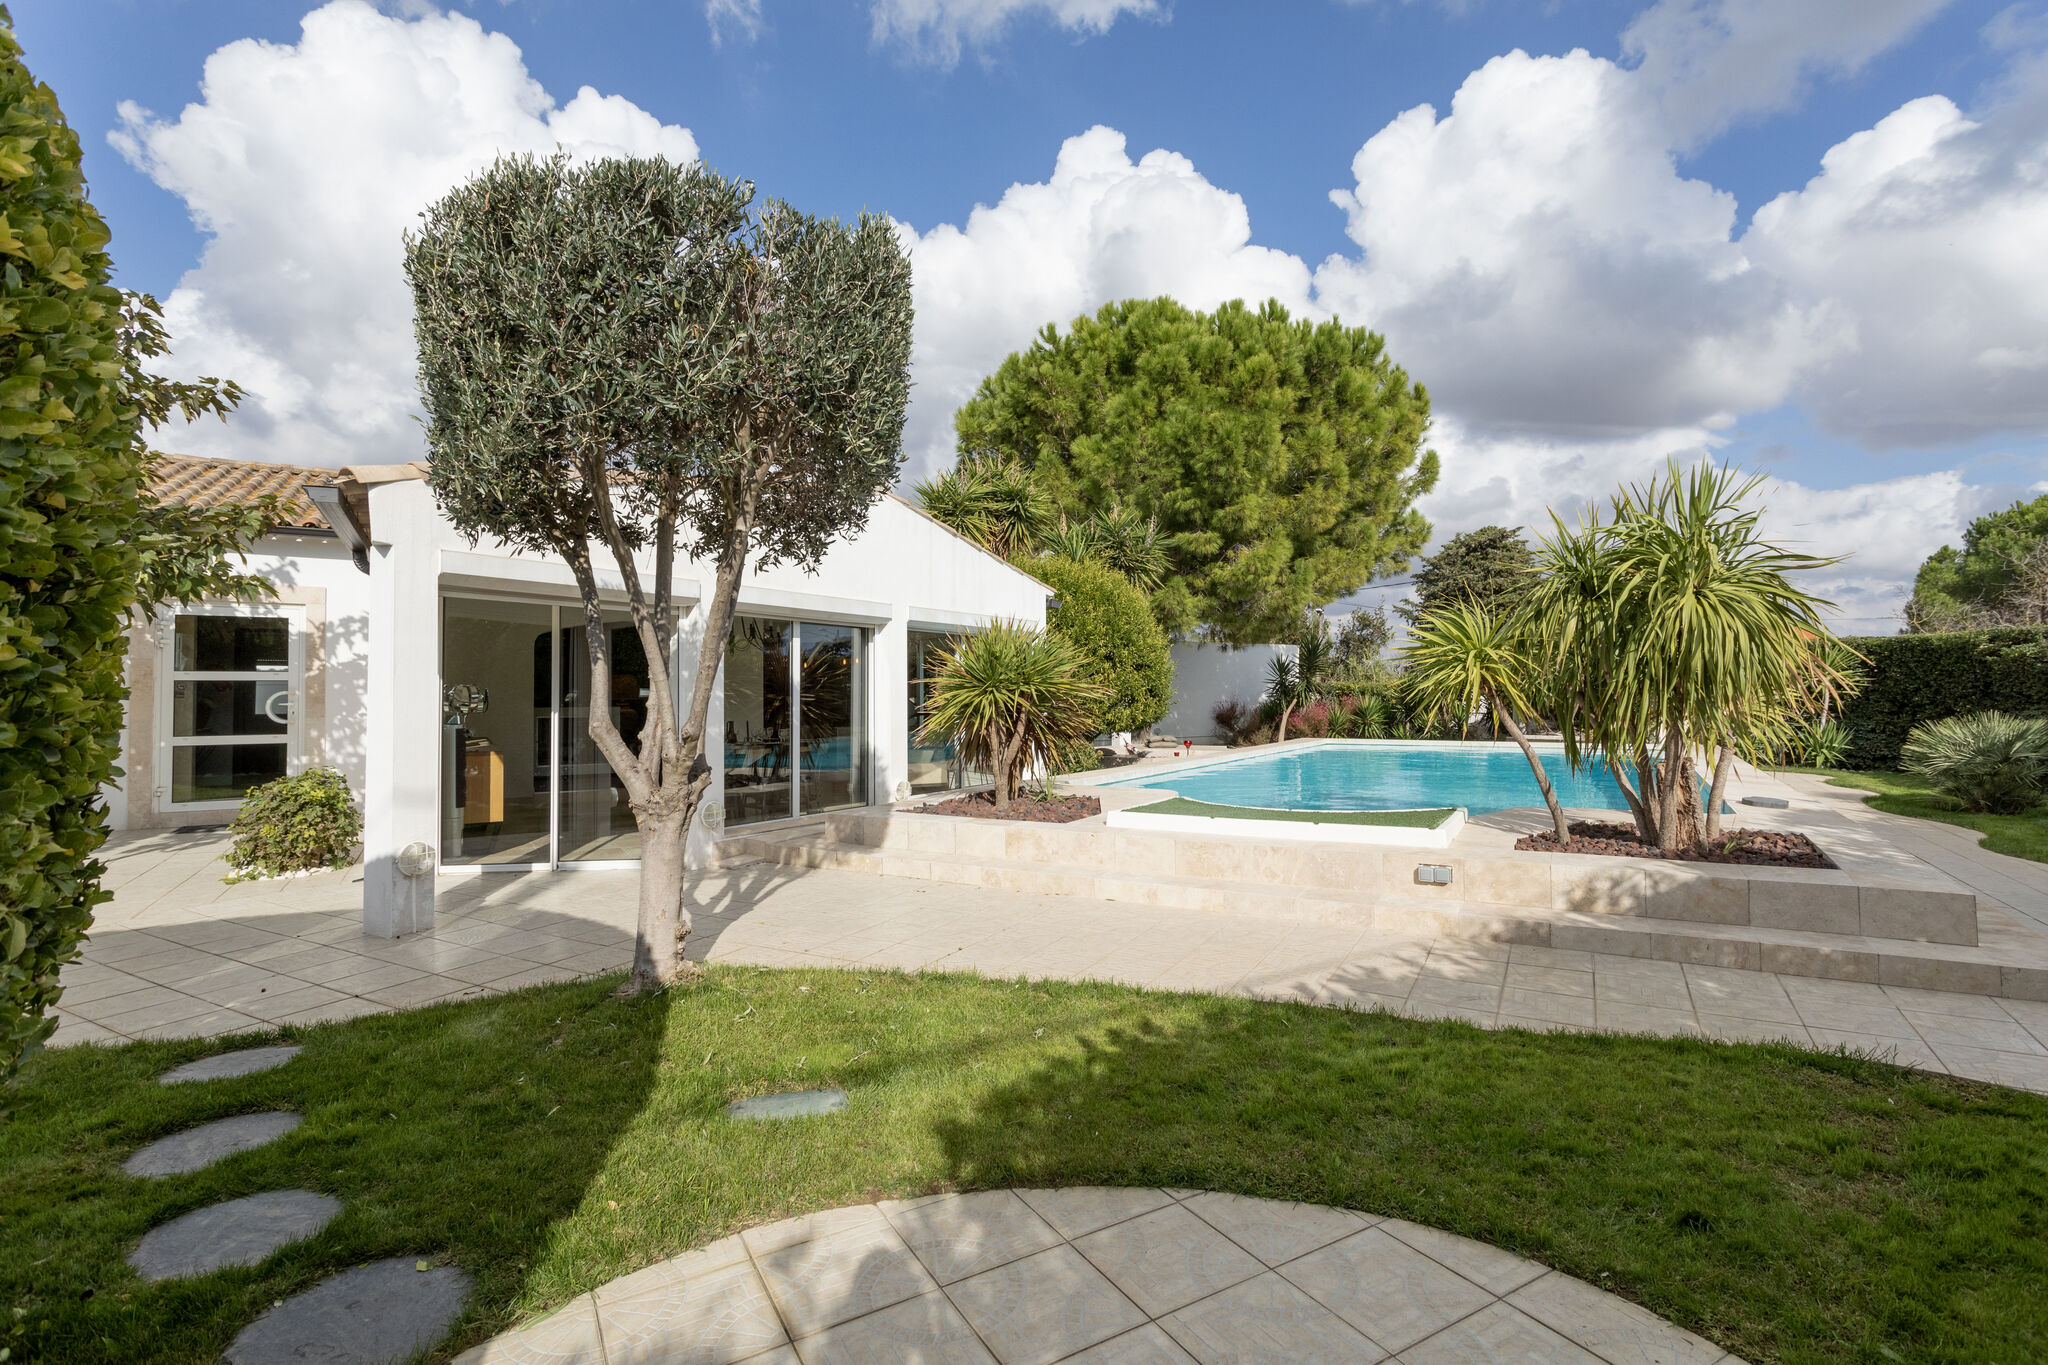 Vrijstaand vakantiehuis in Narbonne met een privézwembad